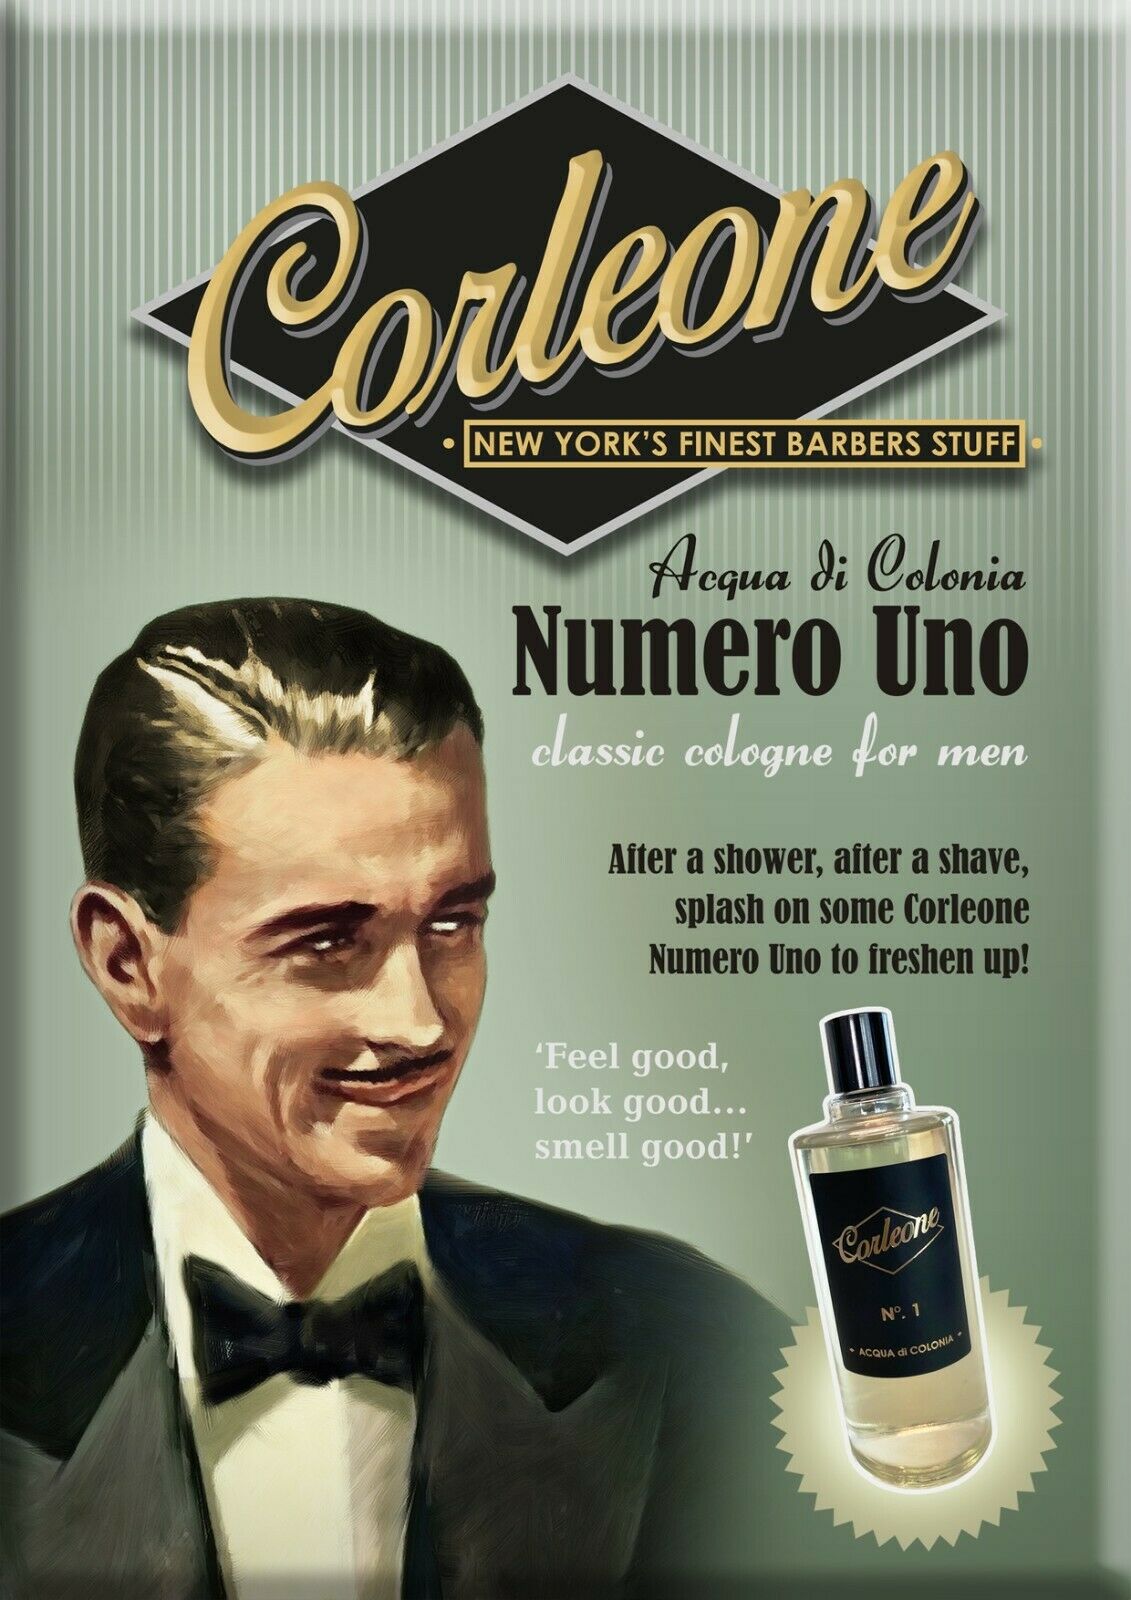 Corleone No. 1 - Acqua di Colonia